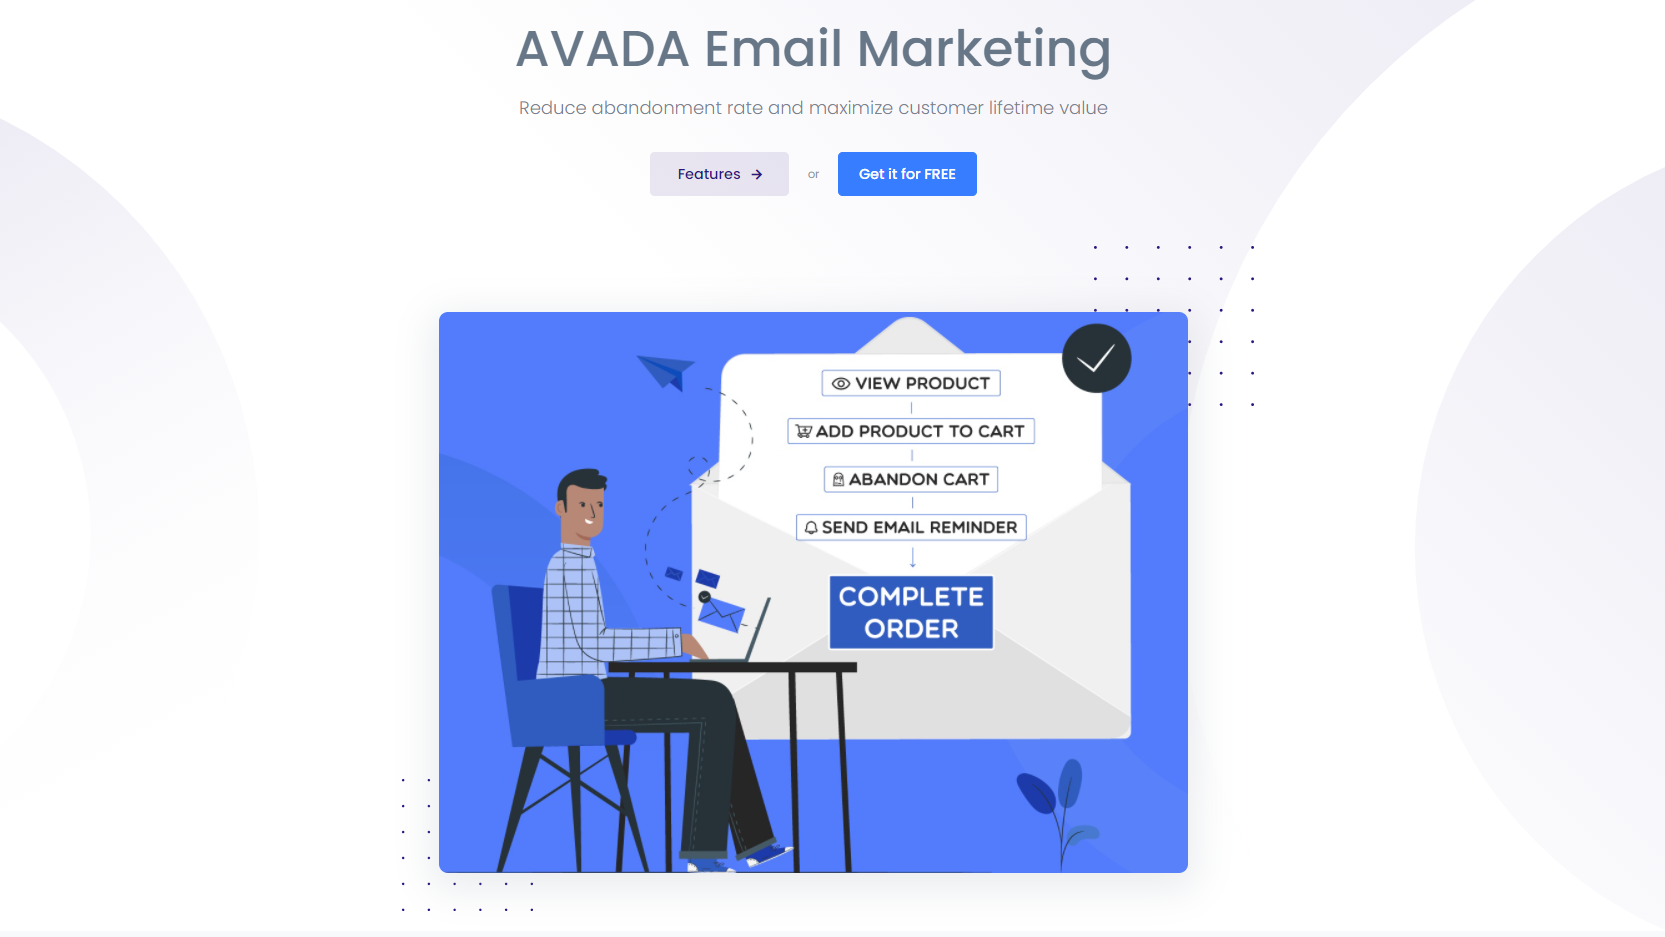 ecommerce marketing automation software: AVADA Email Marketing